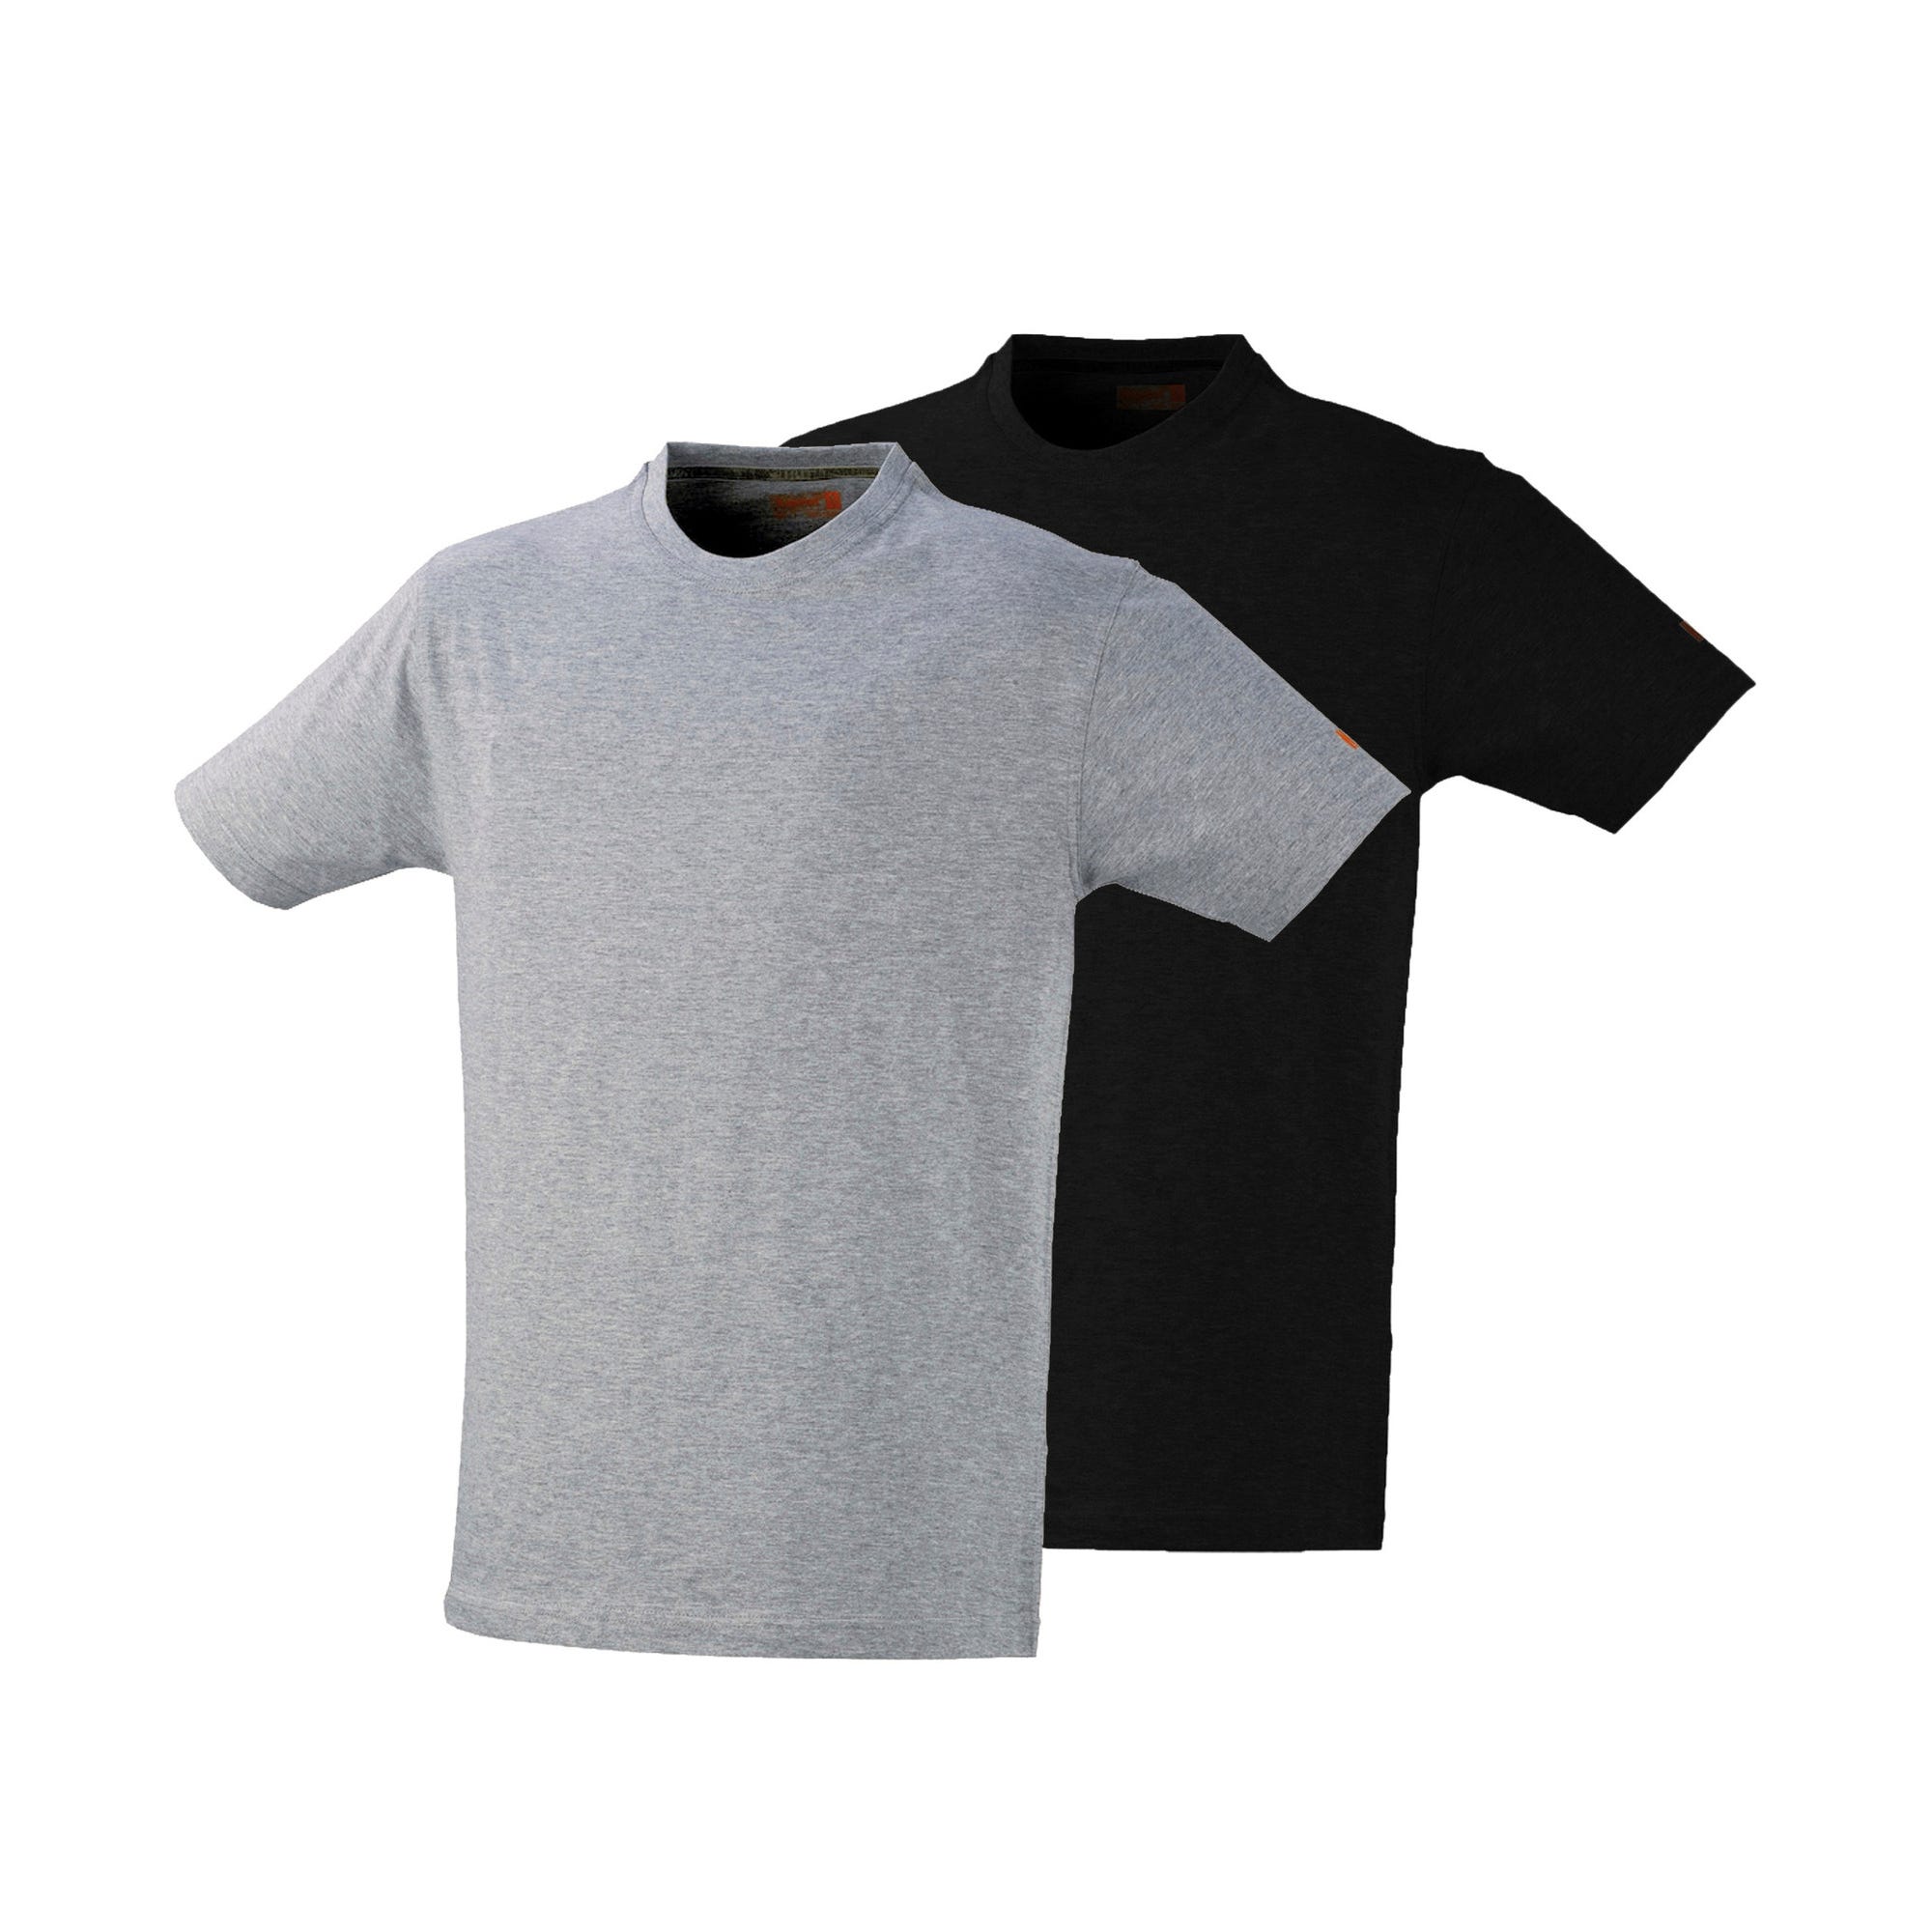 Lot de 2 T-shirt gris / noir T.XL - KAPRIOL 0